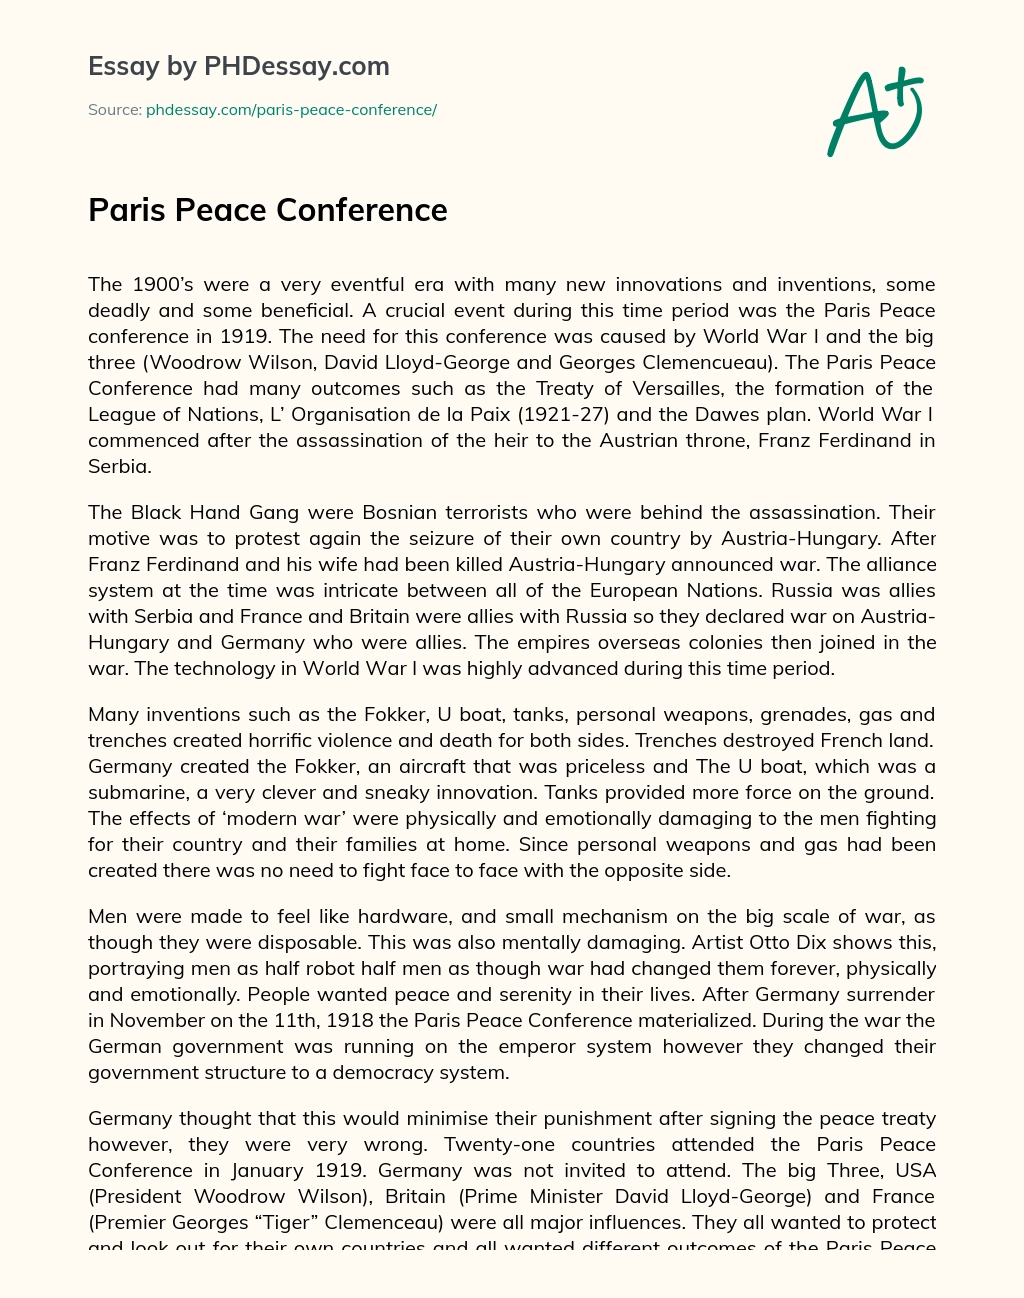 Paris Peace Conference essay